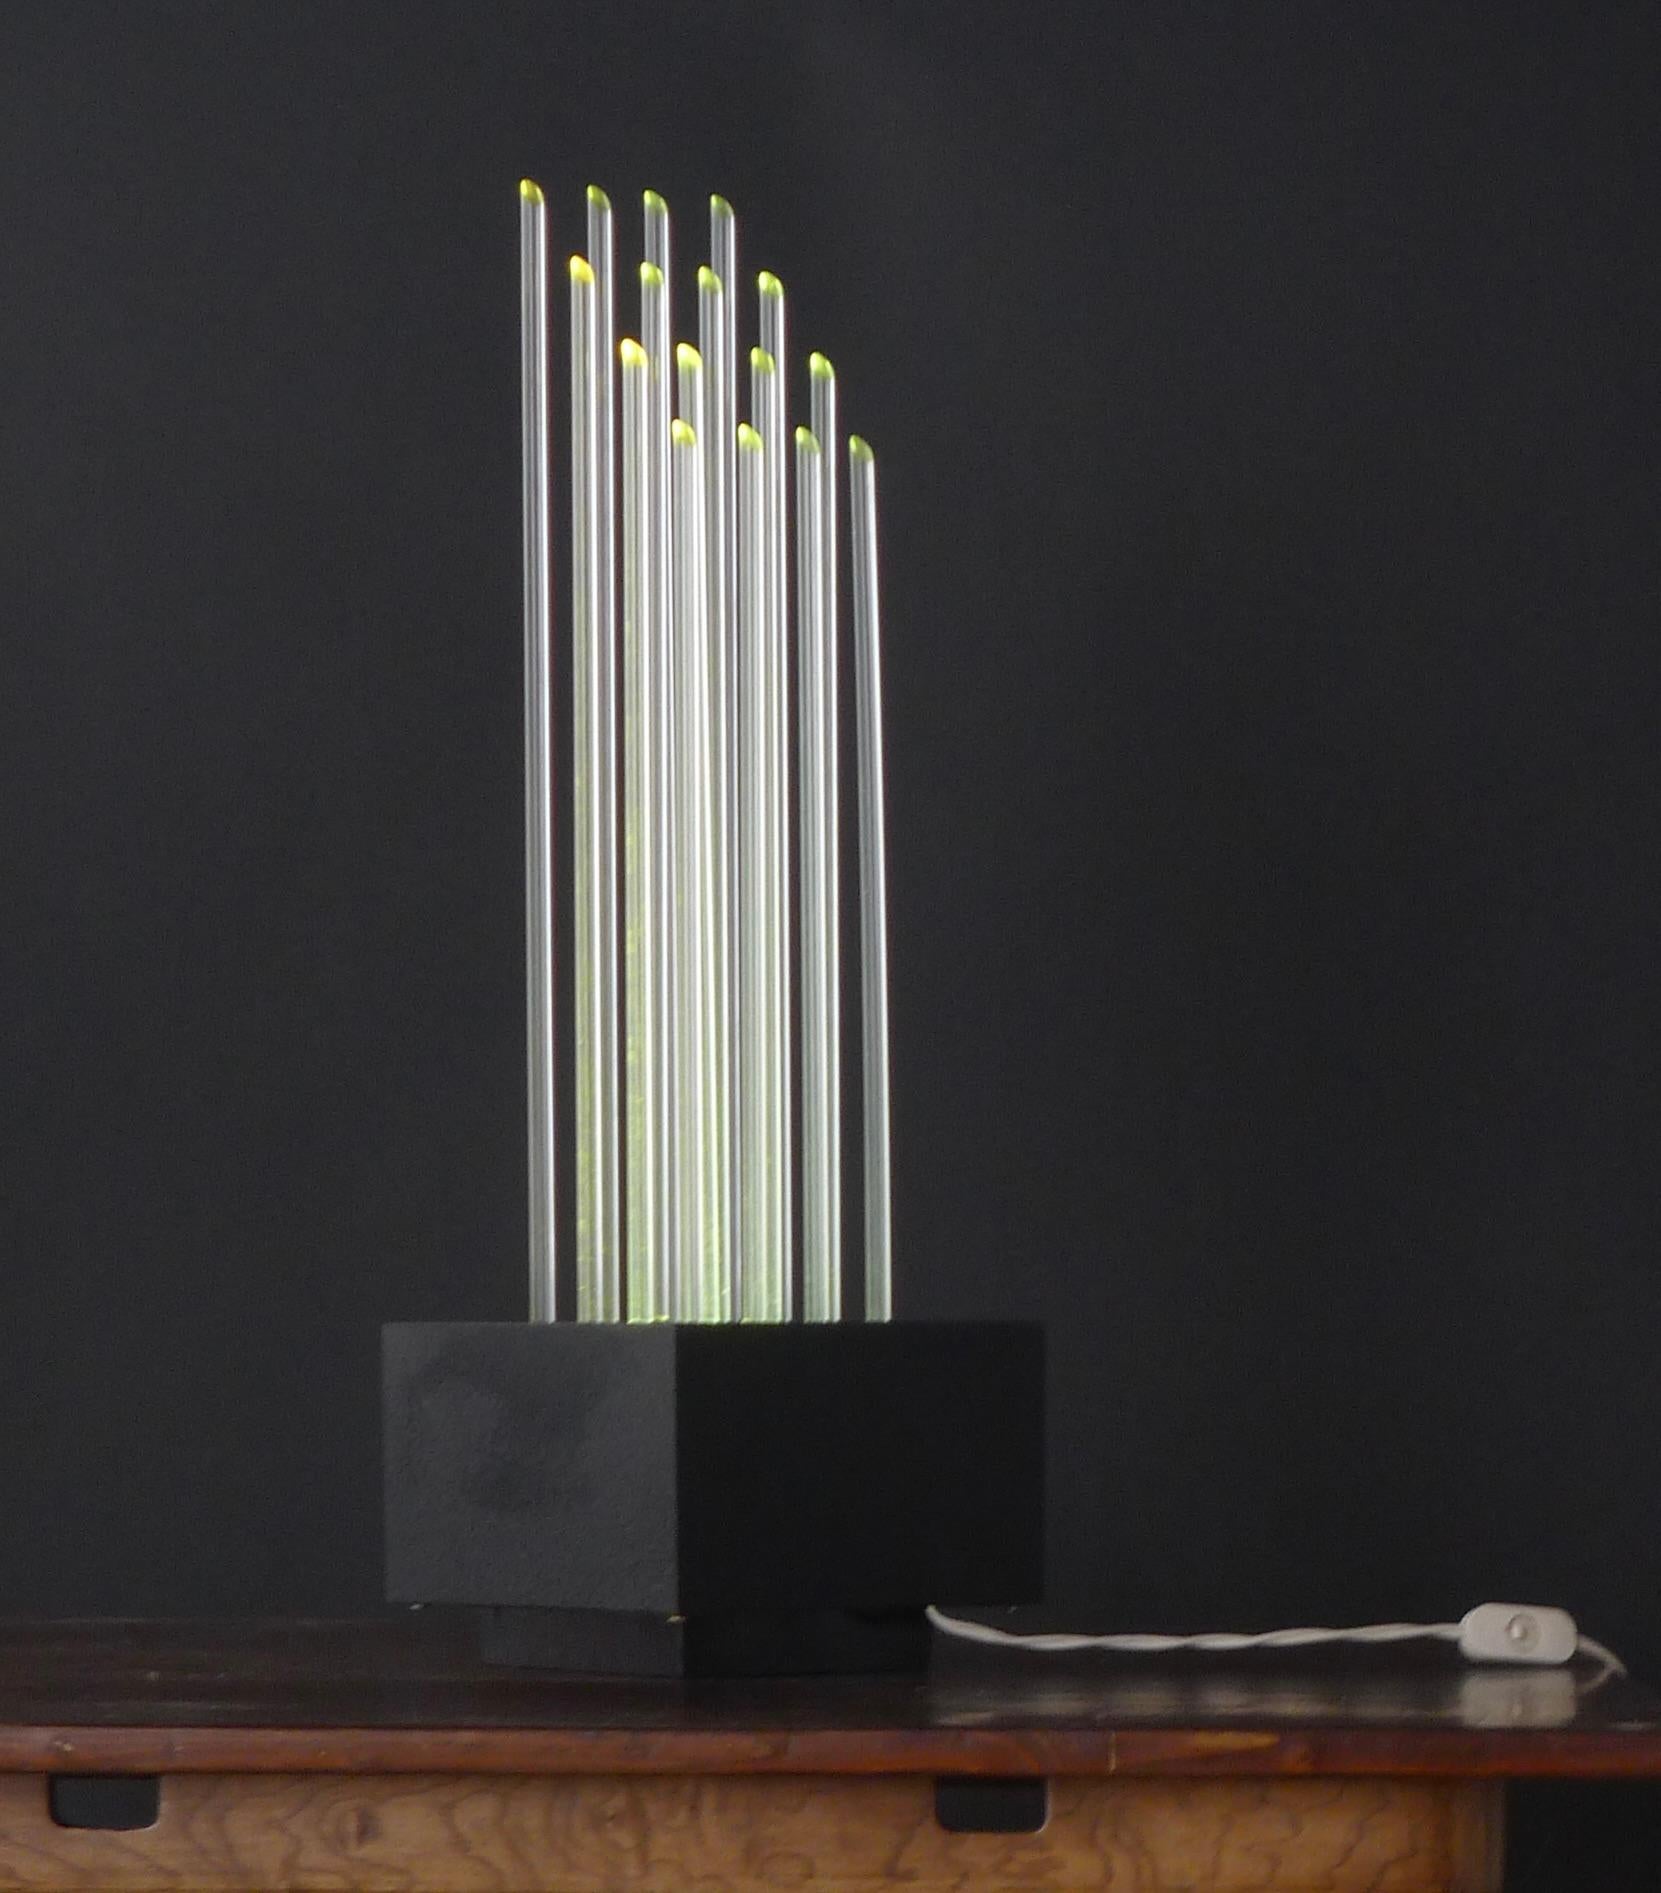 Gianfranco Fini & Fabrizio Cocchia for New Lamp, 1970s Plexiglass Table Light For Sale 1